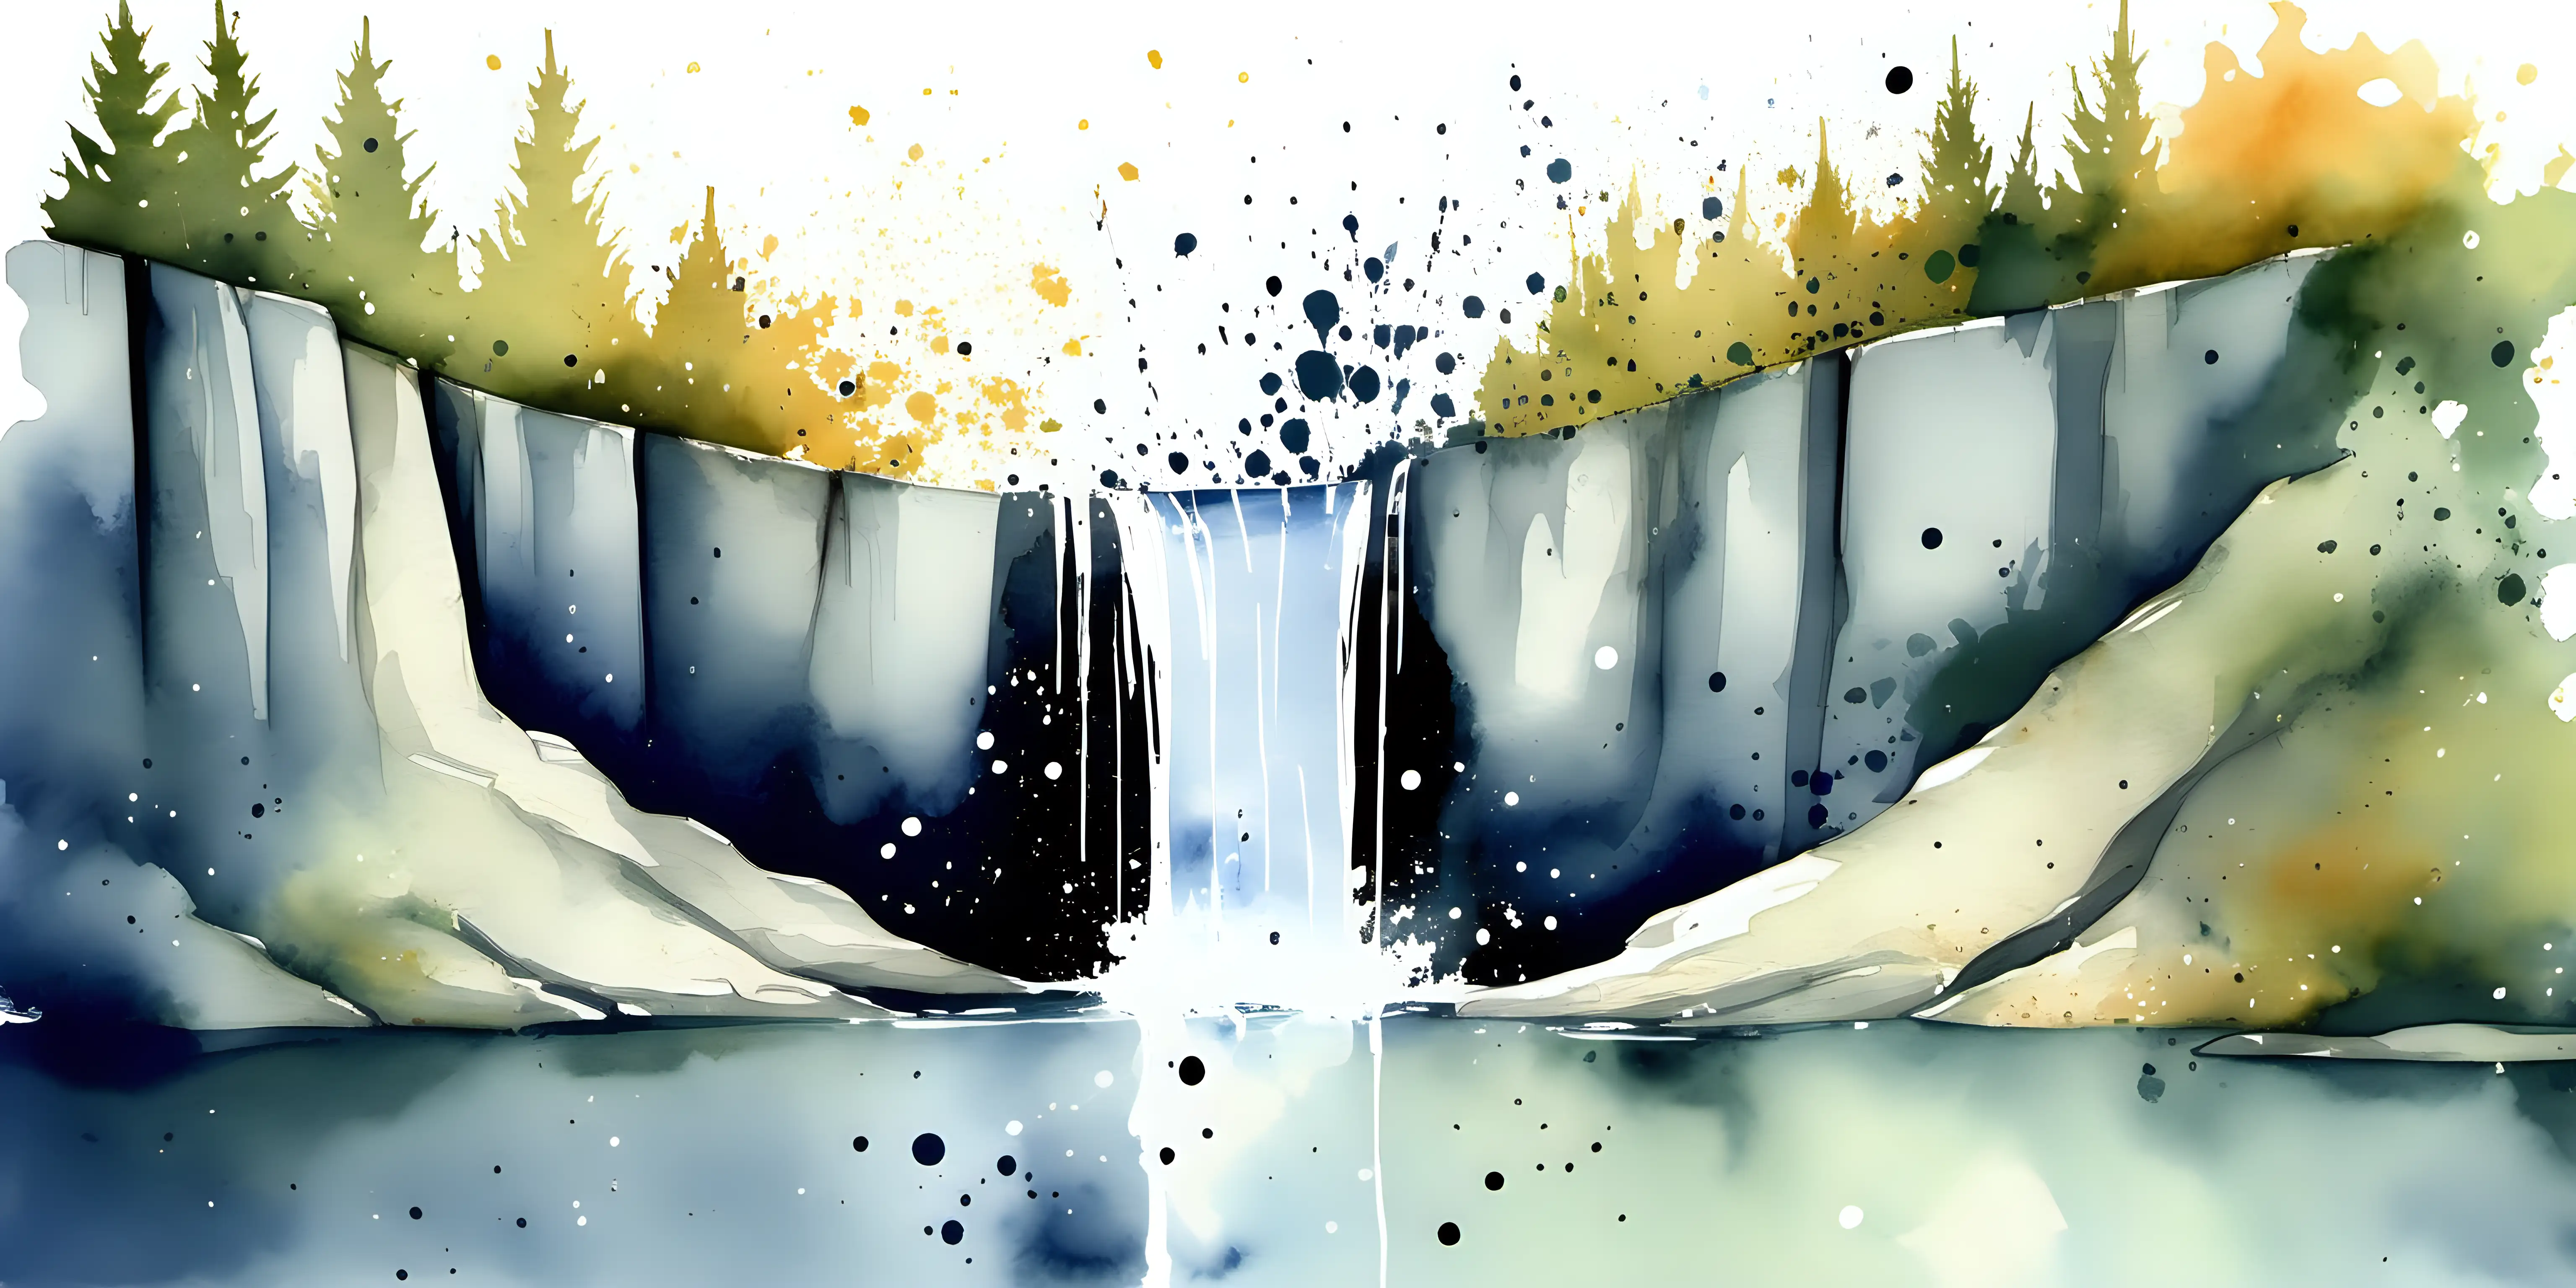 watercolor, waterfall, small lake, paint splatters, minimalistic style